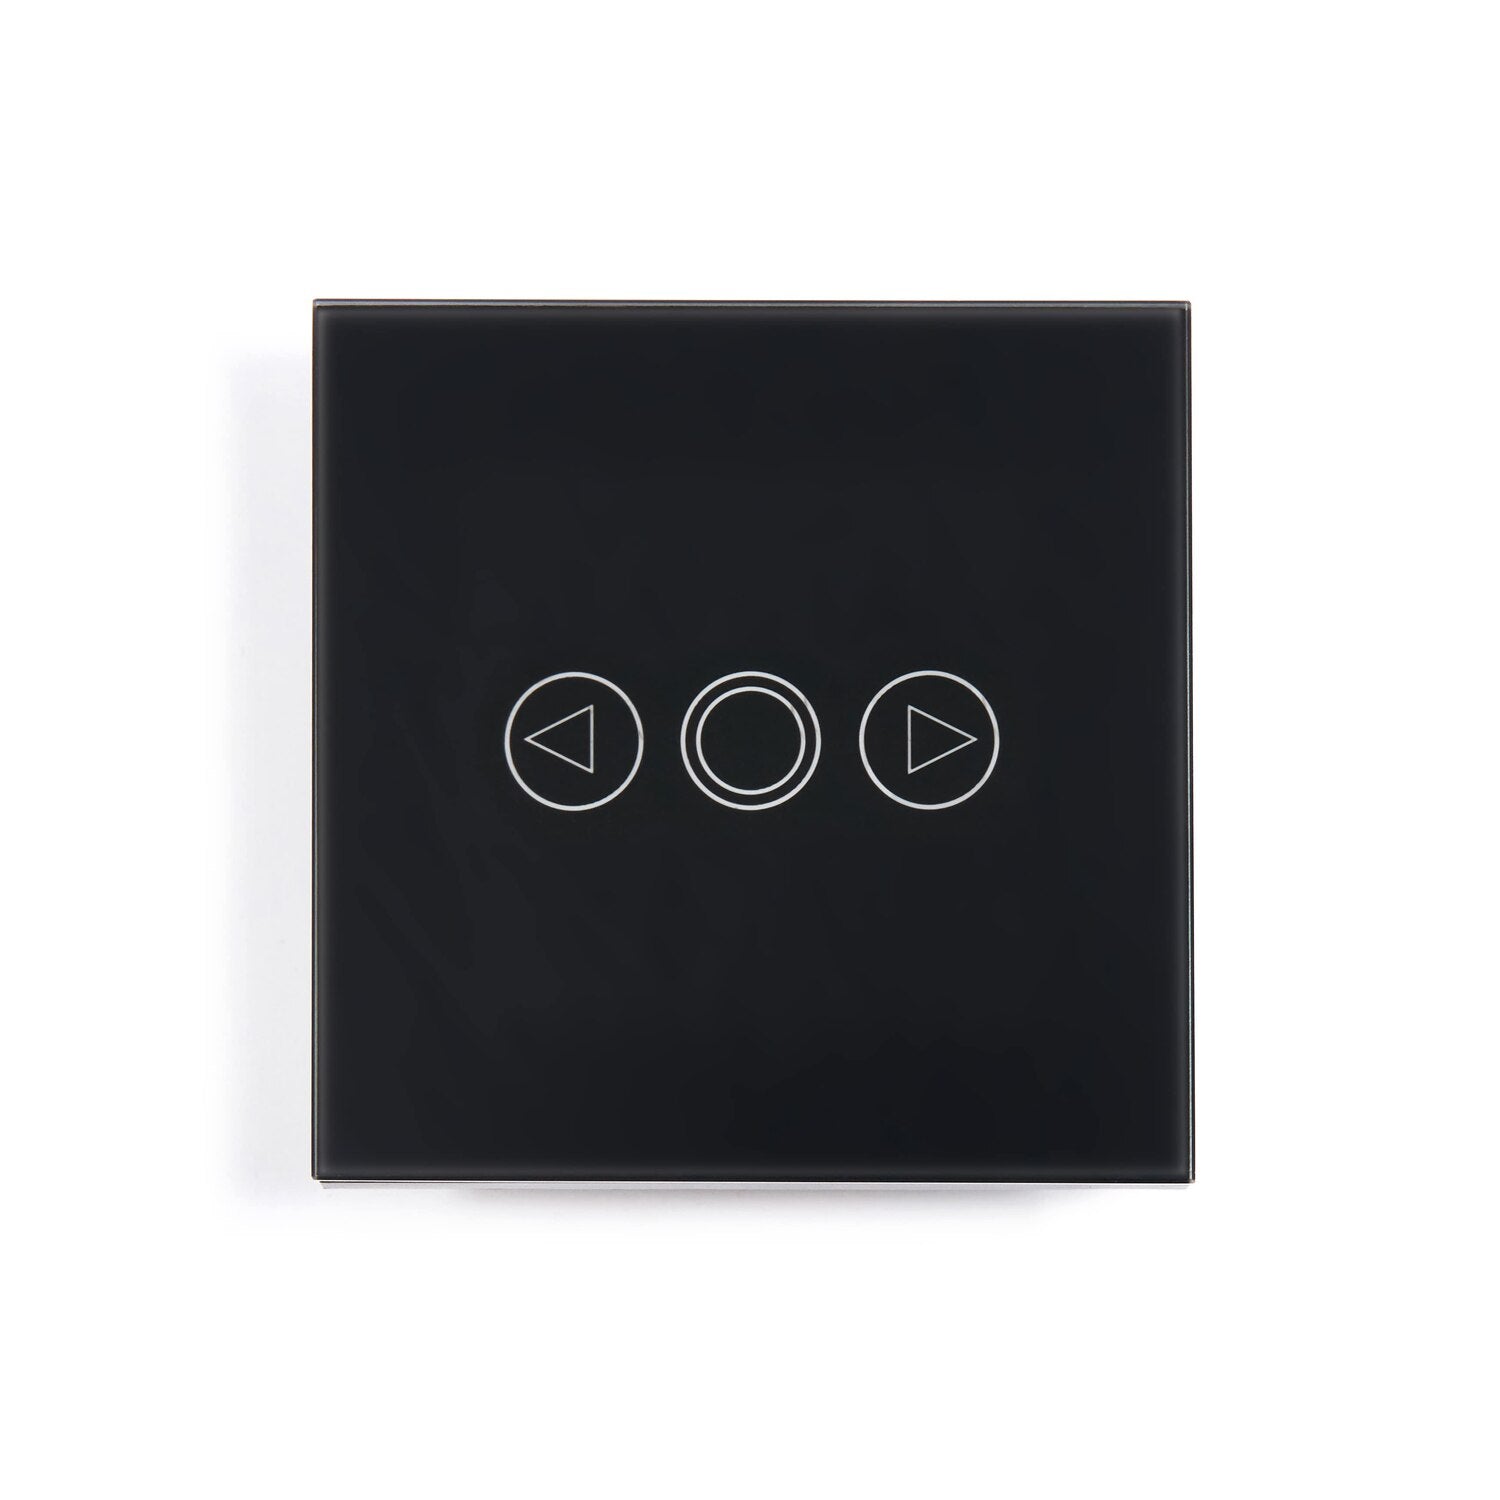 Intrerupator cu touch, Zola®, negru, functie de reglare a intensitatii, butoane iluminate, panou sticla, 8.6x8.6x3.3 cm